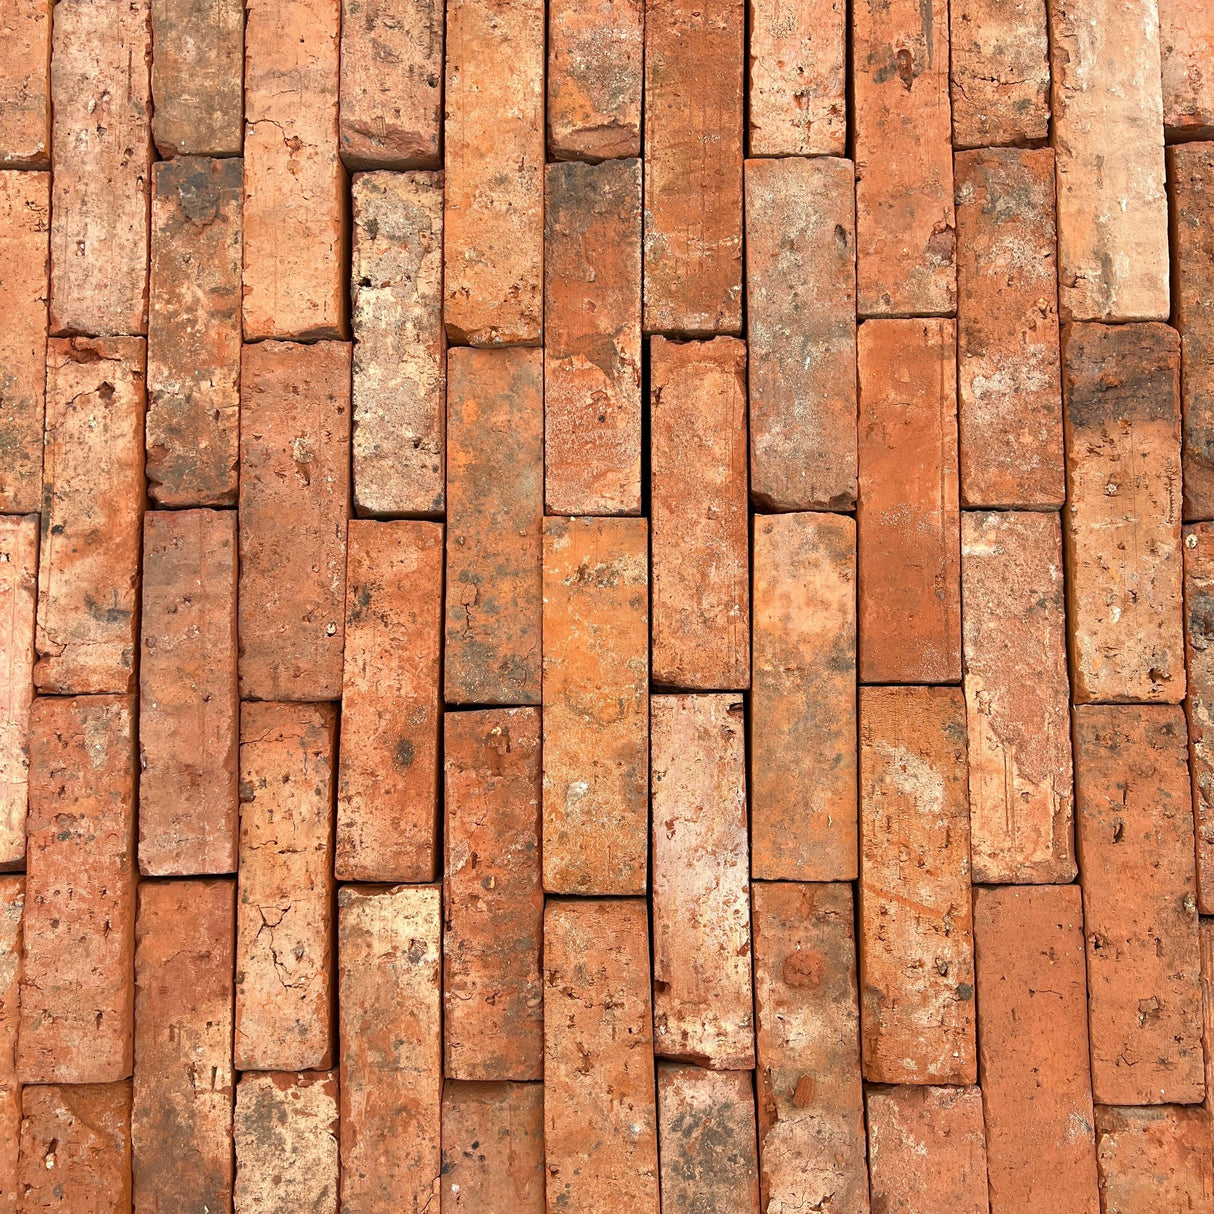 Narrow Garden Paving Bricks - Reclaimed Brick Company